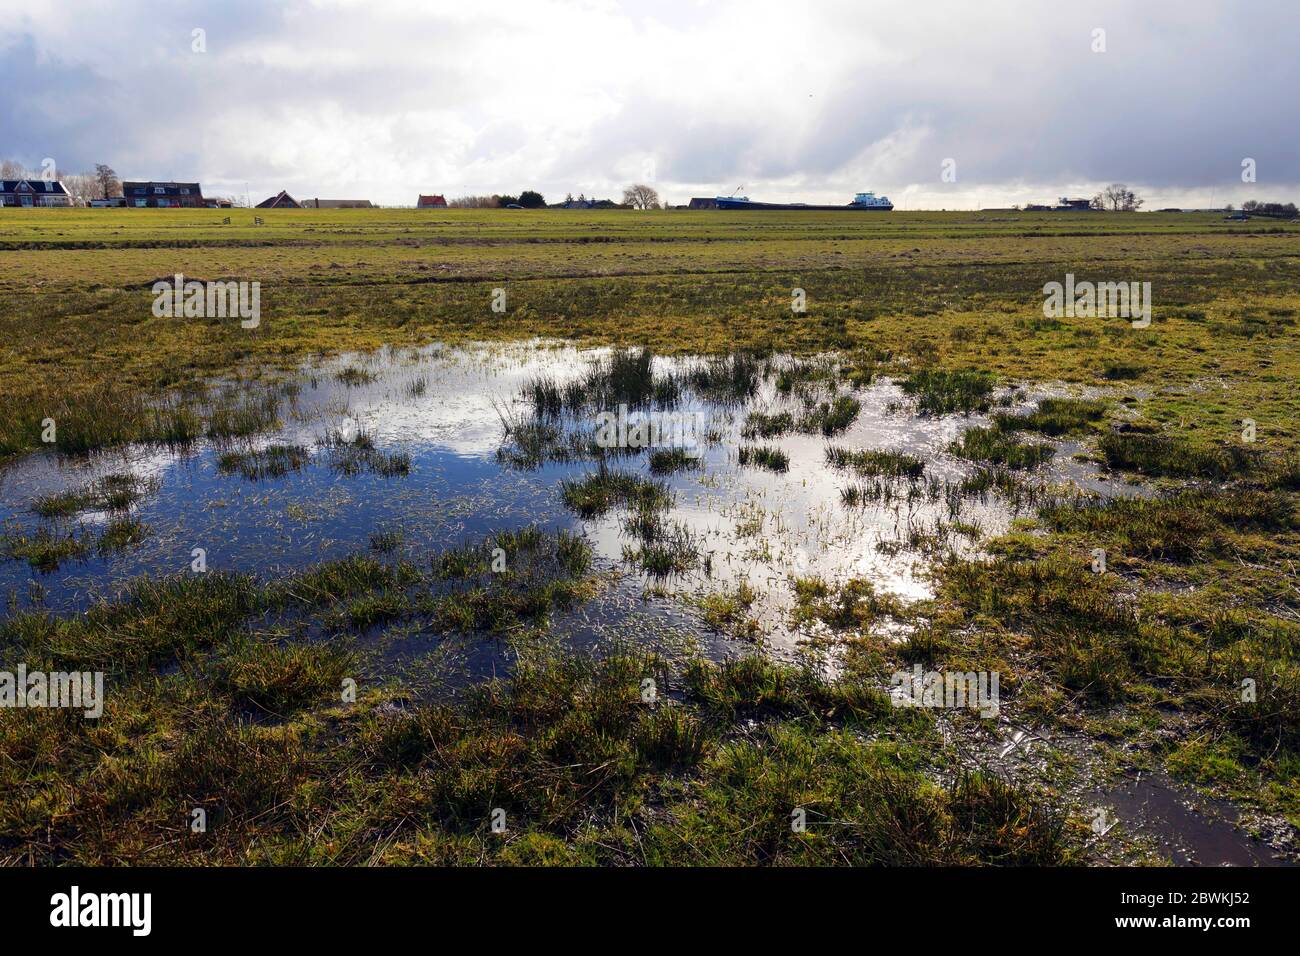 Feuchtwiese, Lebensraum für Wiesenzuchtvögel wie mehrere Watvögel, Niederlande, Nordniederland, Zwaanshoek Stockfoto